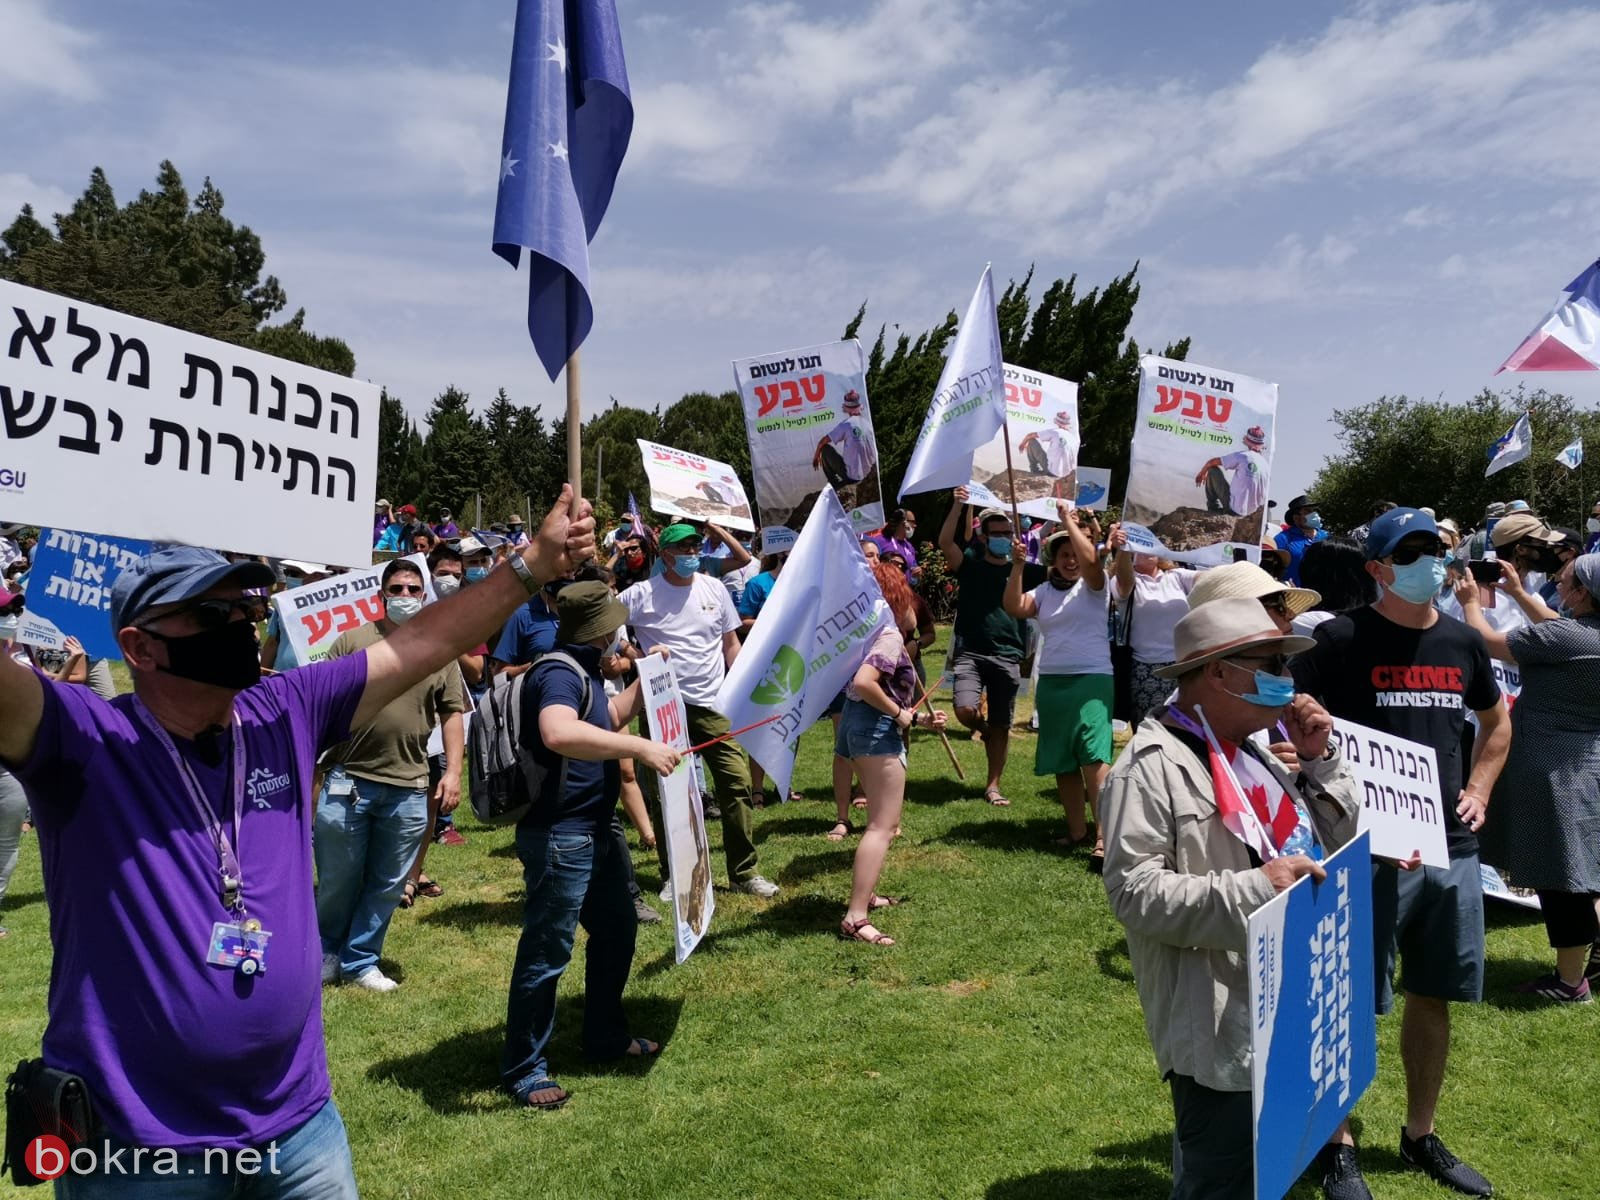  القدس: وقفة احتجاجية تطالب الحكومة بالاهتمام بقطاع السياحة والرحلات التربوية ودفع التعويضات-4